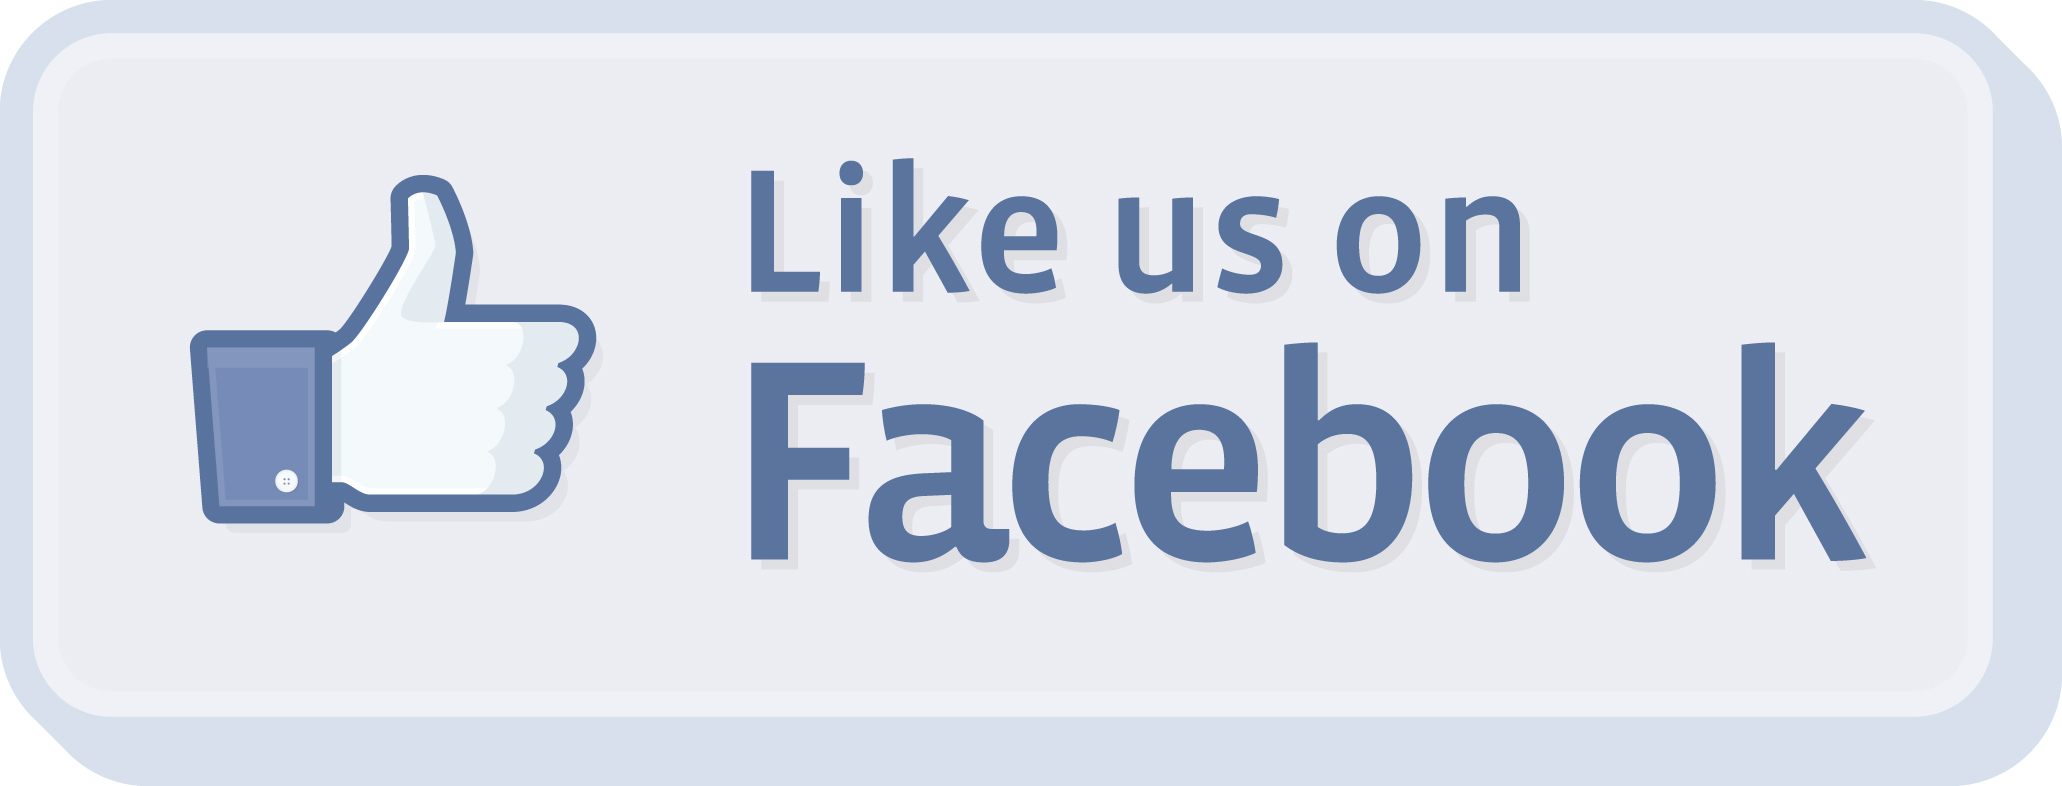 like-us-on-facebook-logo